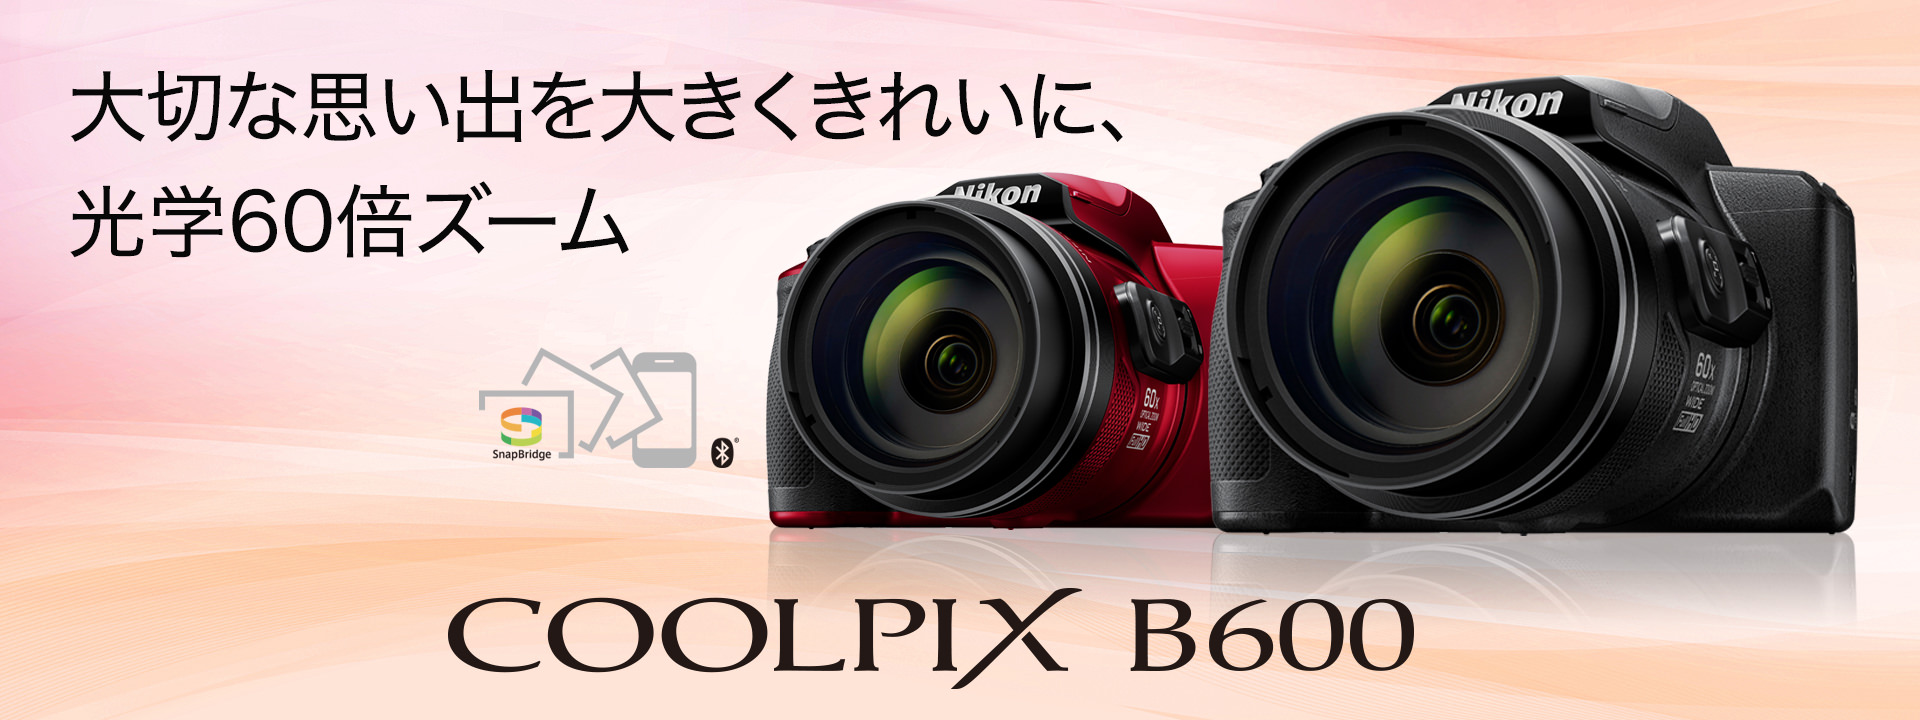 Nikon coolpix Ｂ600以下引用にて説明です